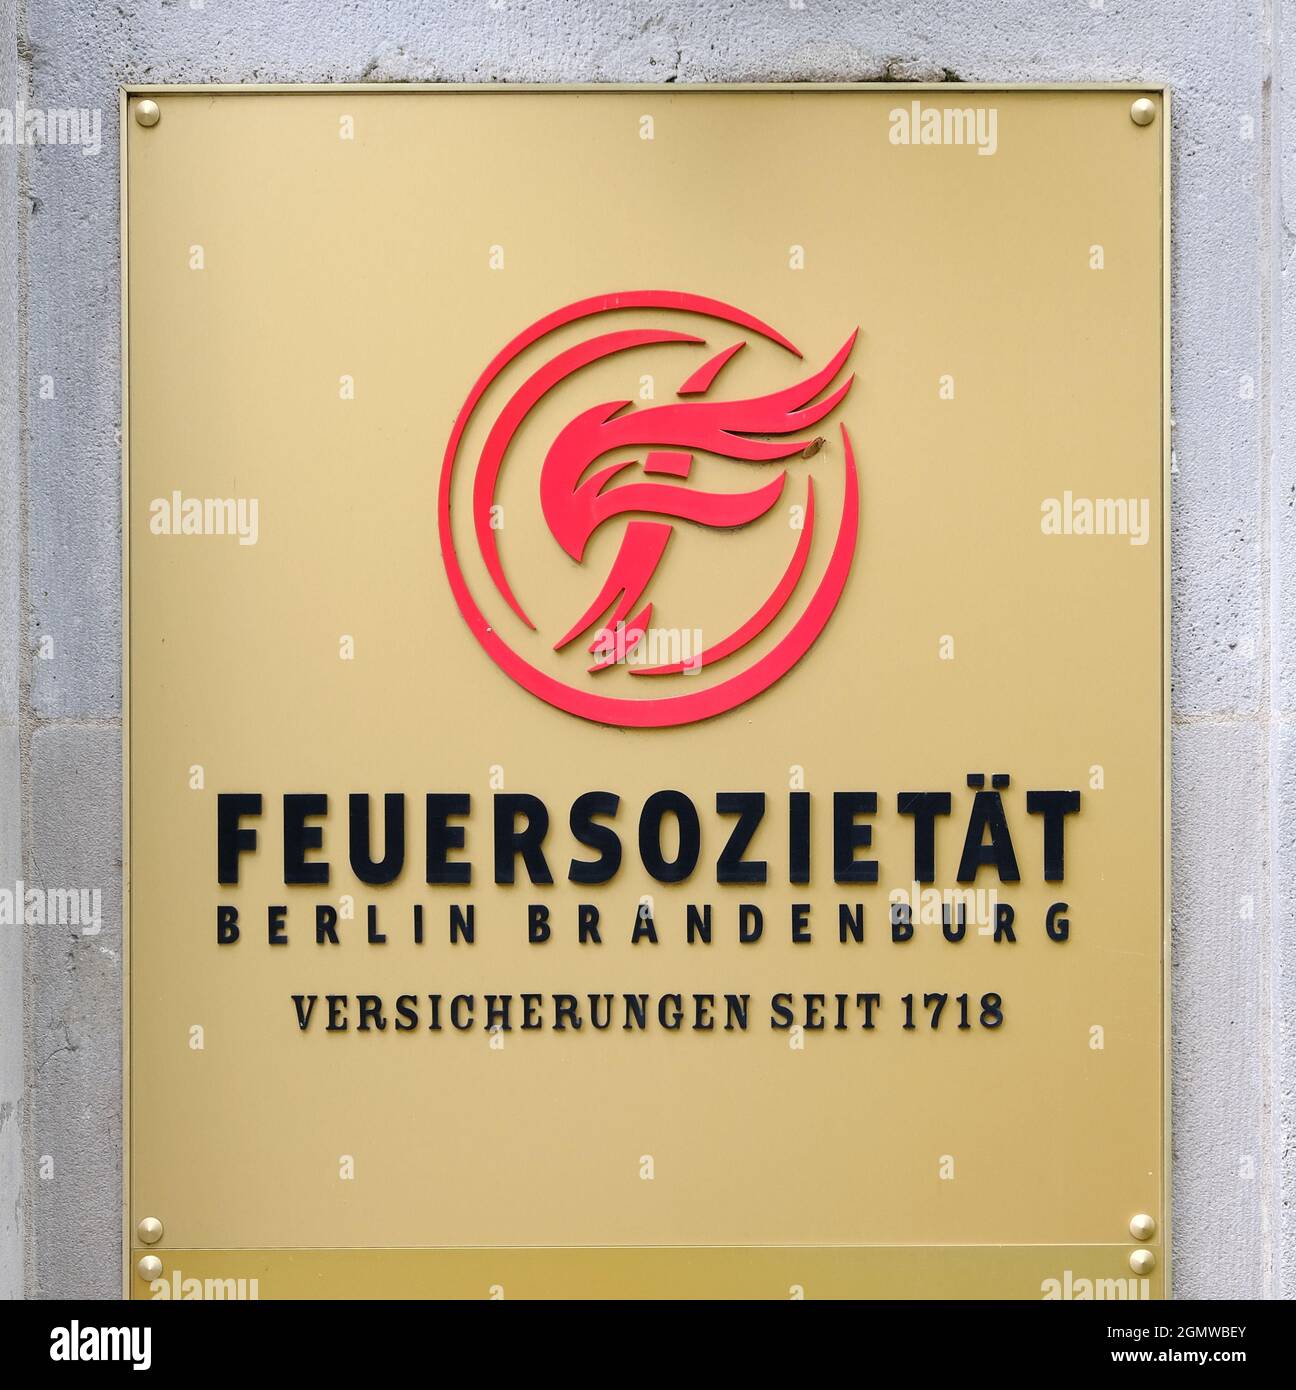 Berlin, 16. September 2021, Zeichen der Feuersozietaet - Versicherung seit 1718 Stockfoto